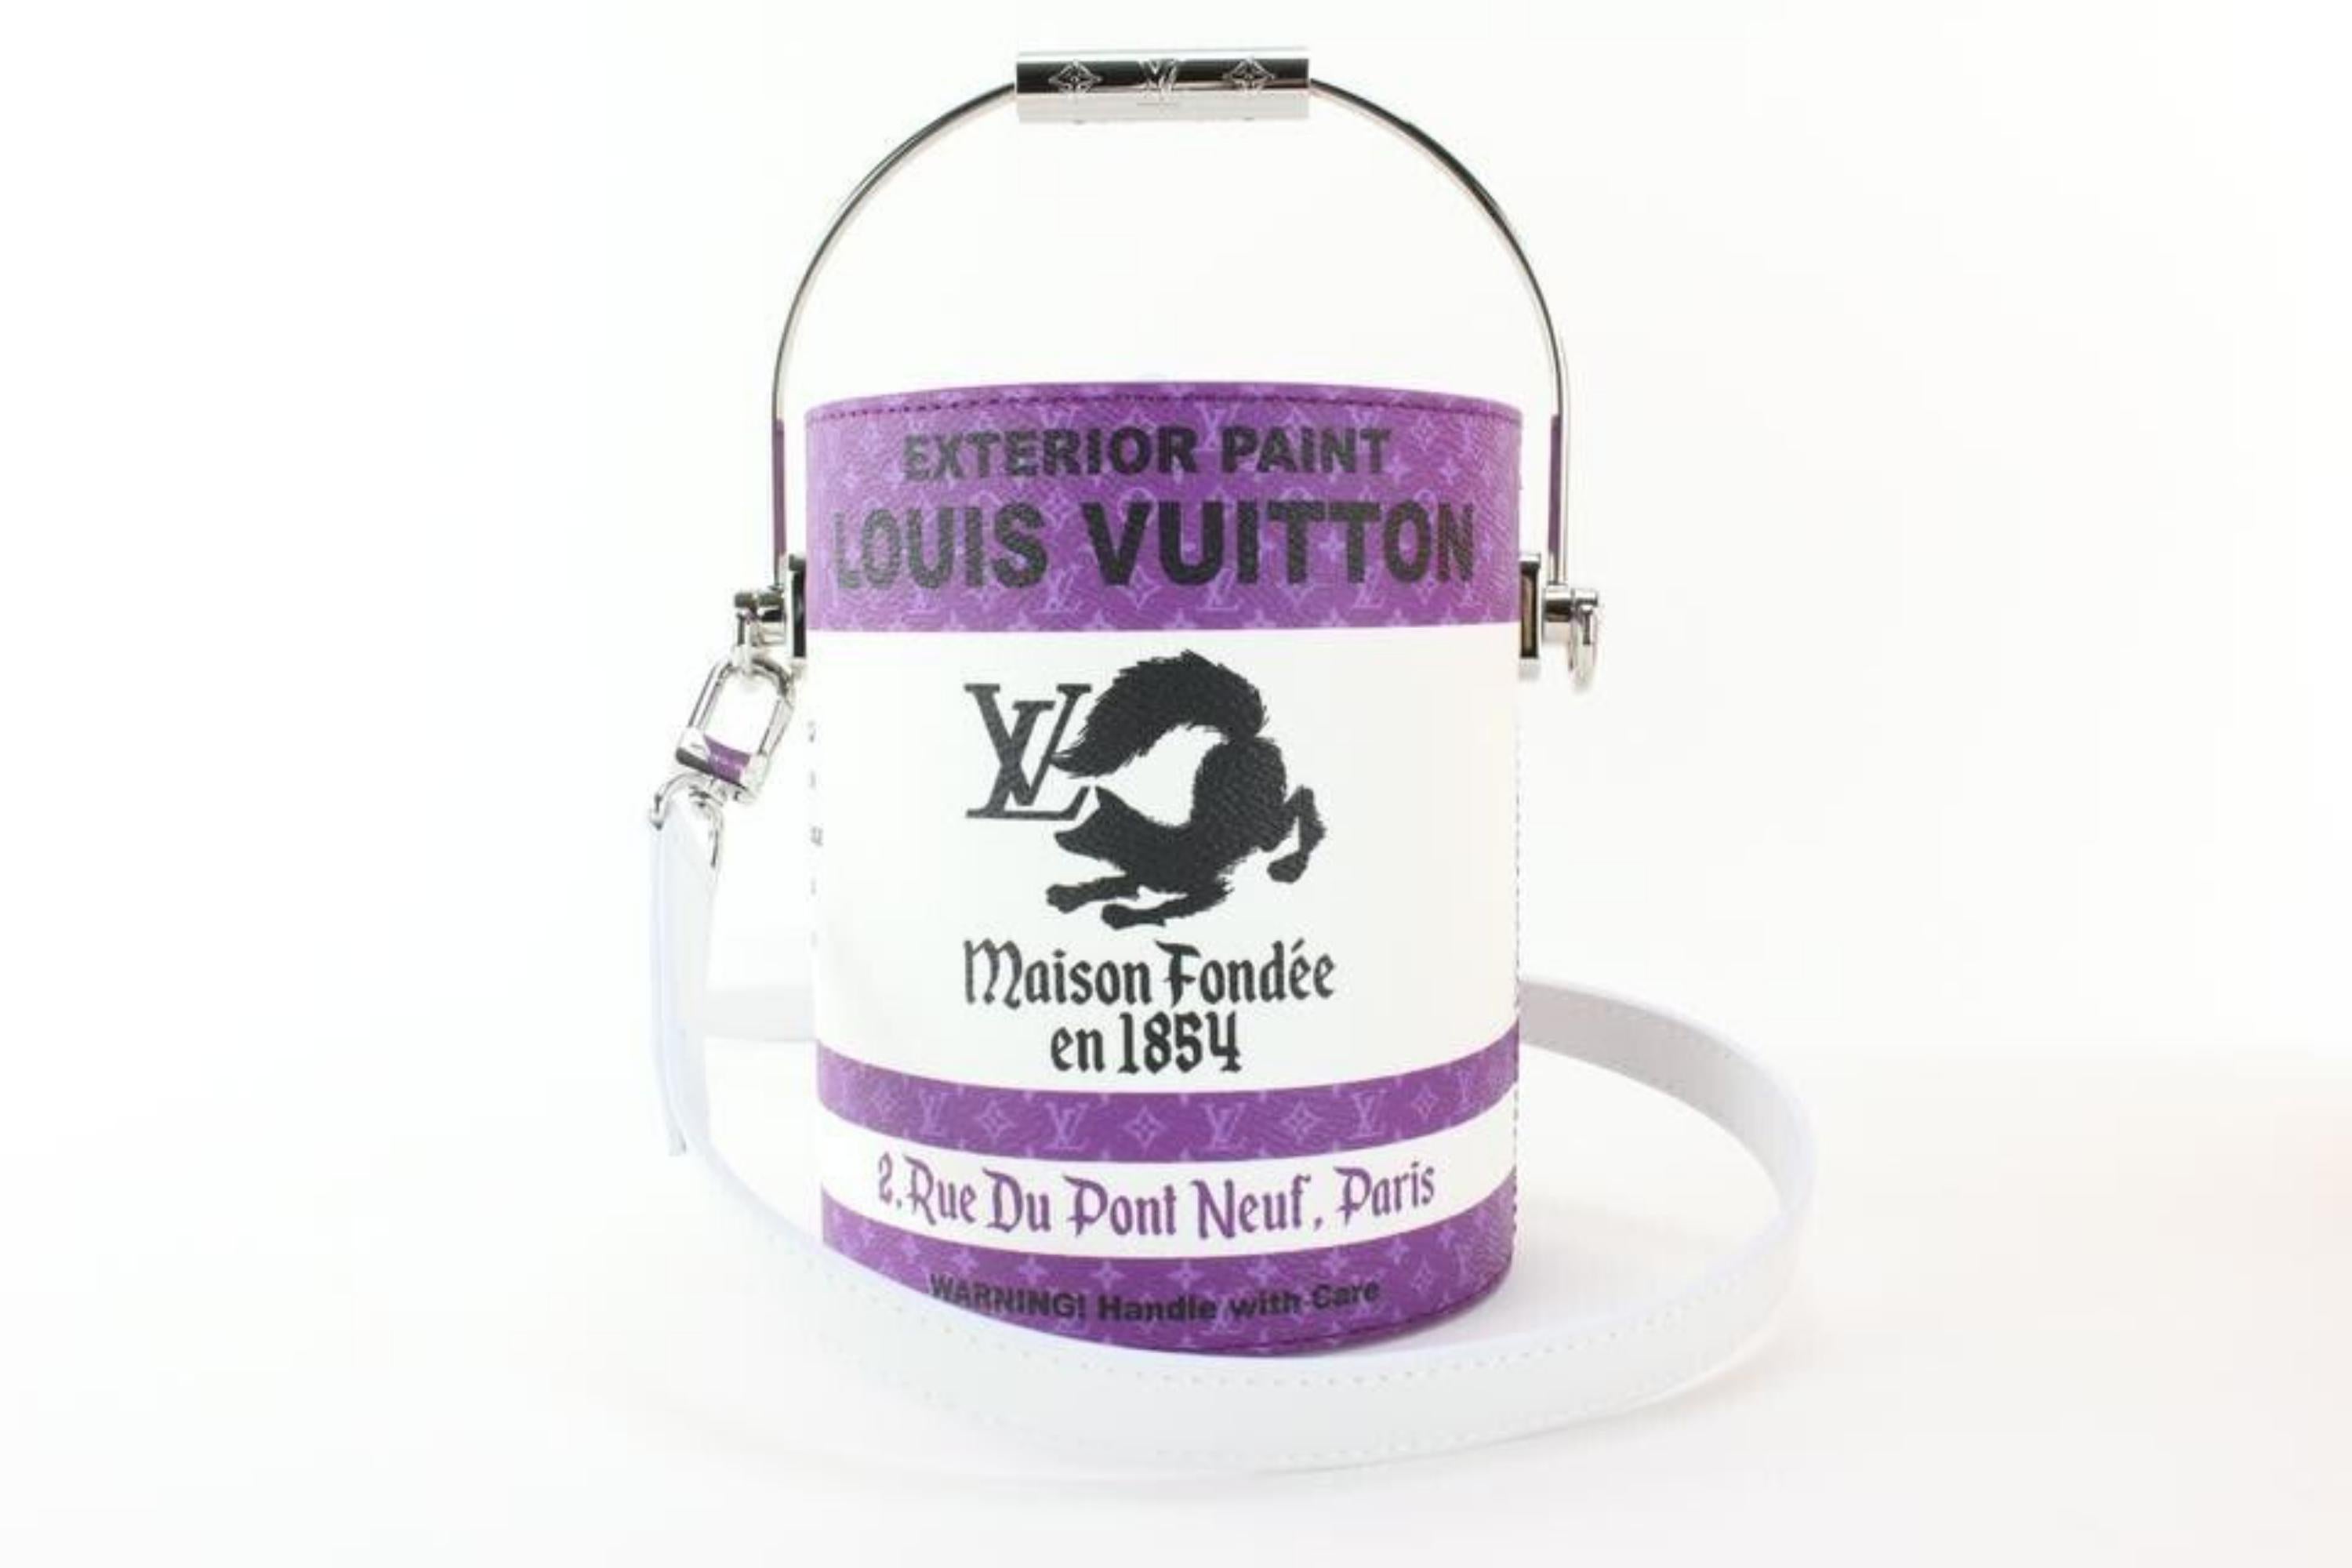 Louis Vuitton drops new Paint Can Bag as part of Virgil Abloh's